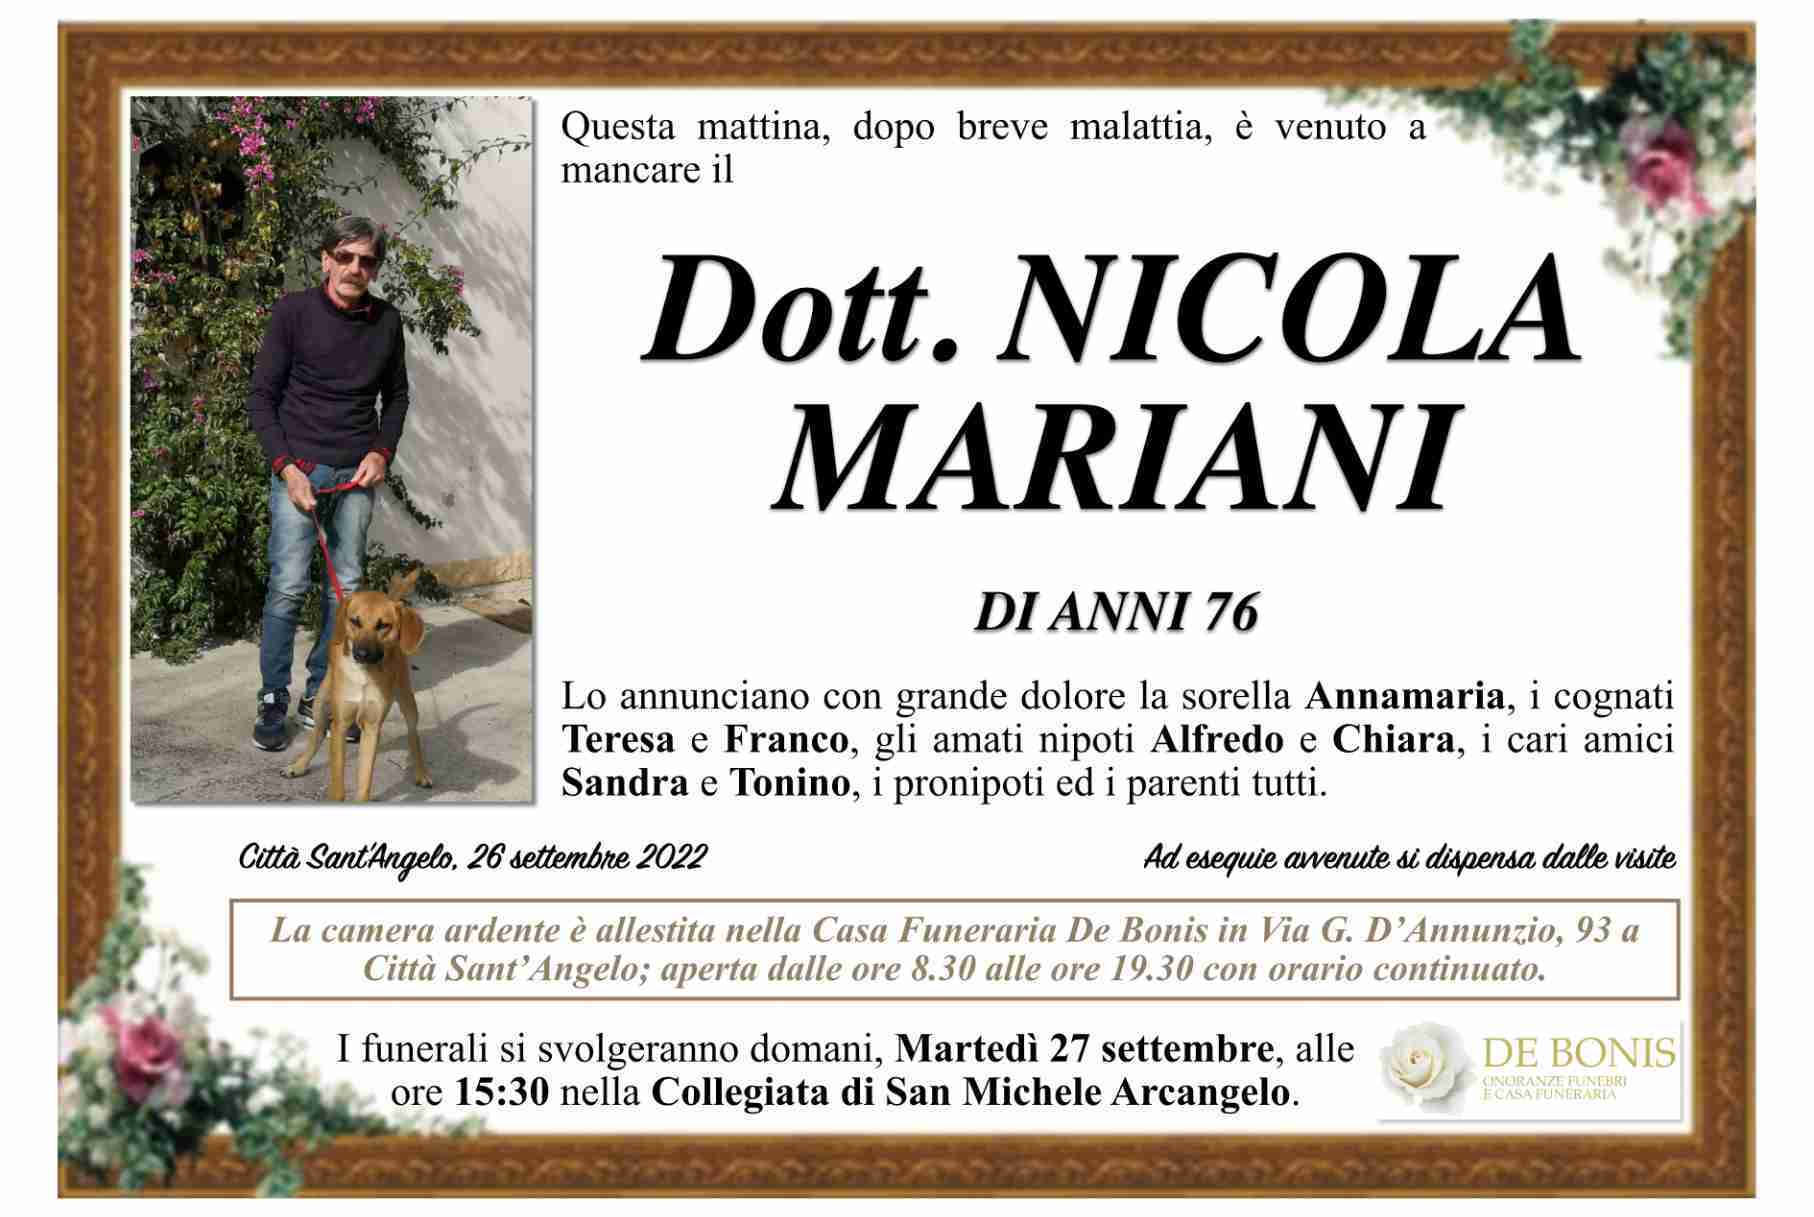 Nicola Mariani